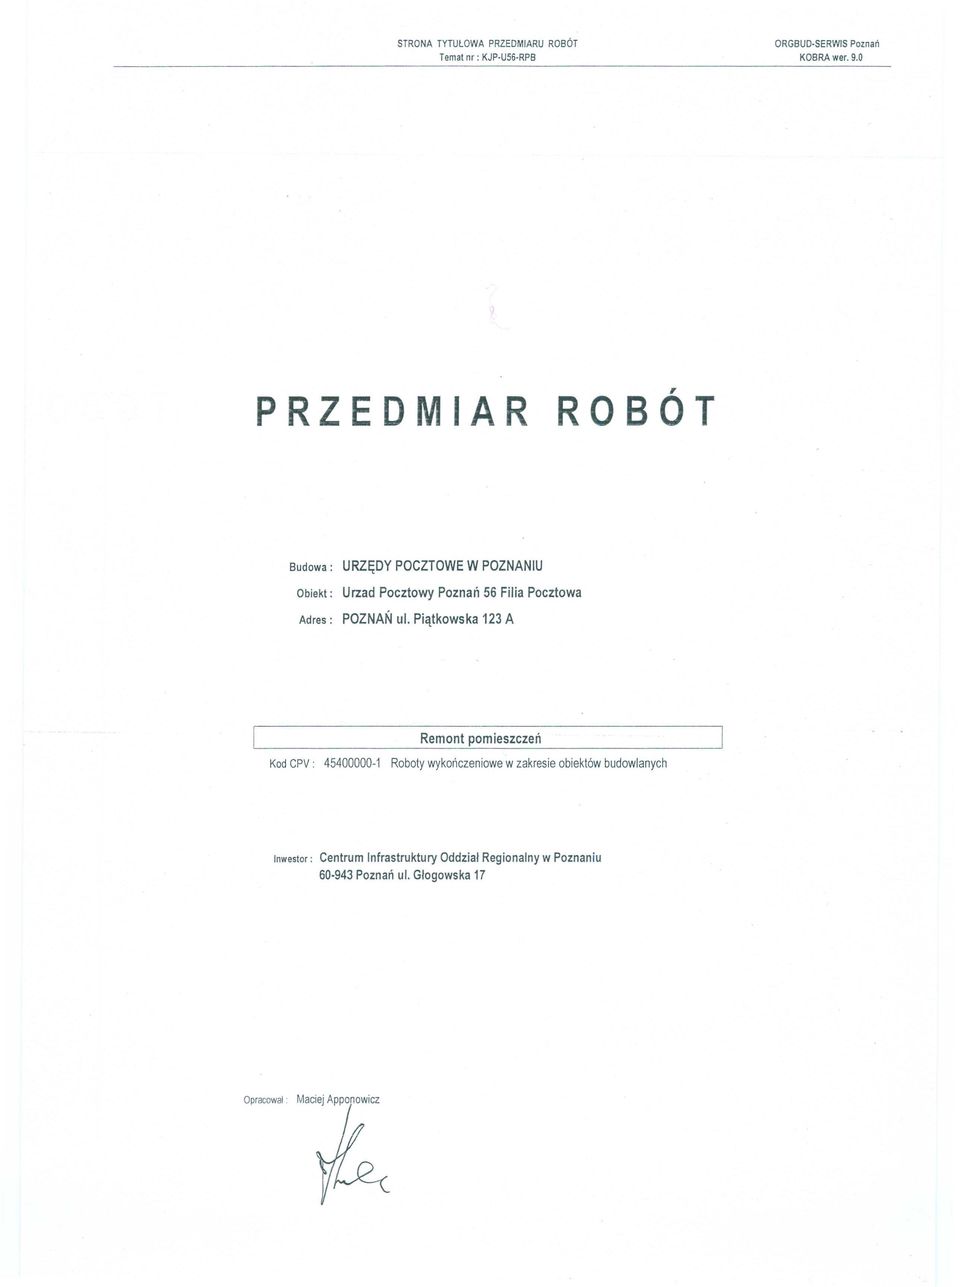 Piątkowska 123 A Remont pomieszczeń Kod CPV: 45400000-1 Roboty wykończeniowe w zakresie